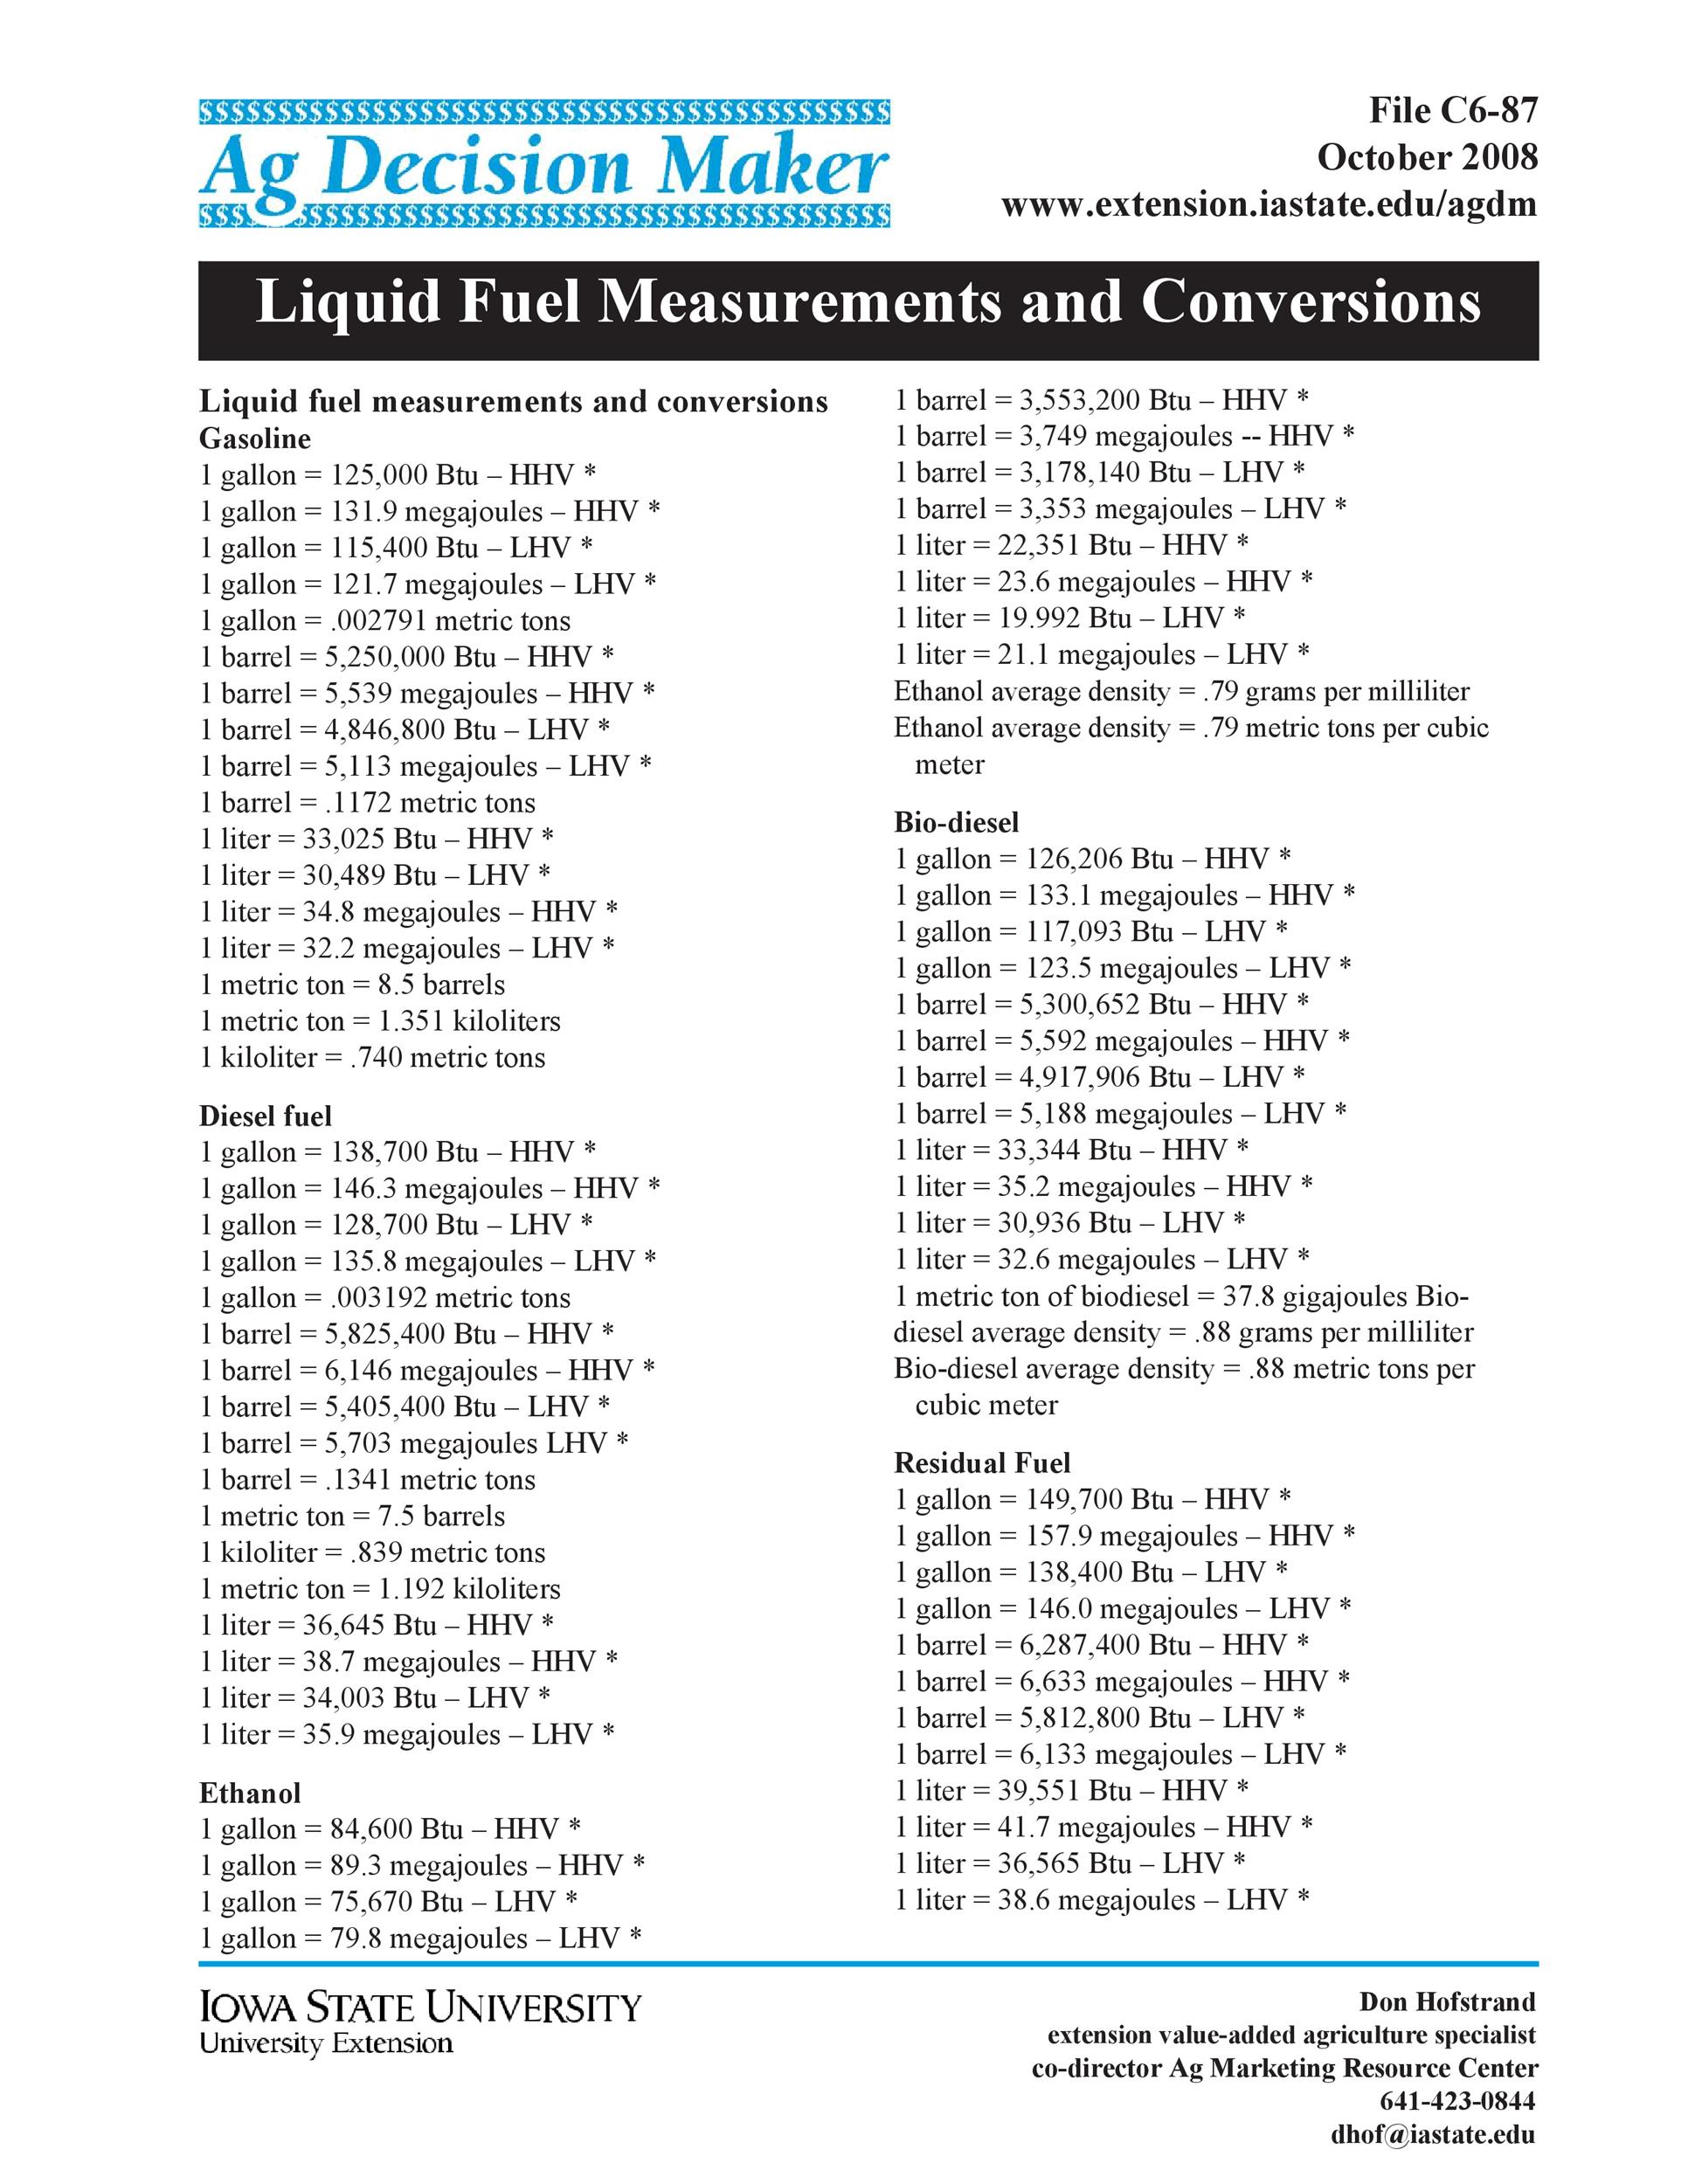 Free liquid measurements chart 07